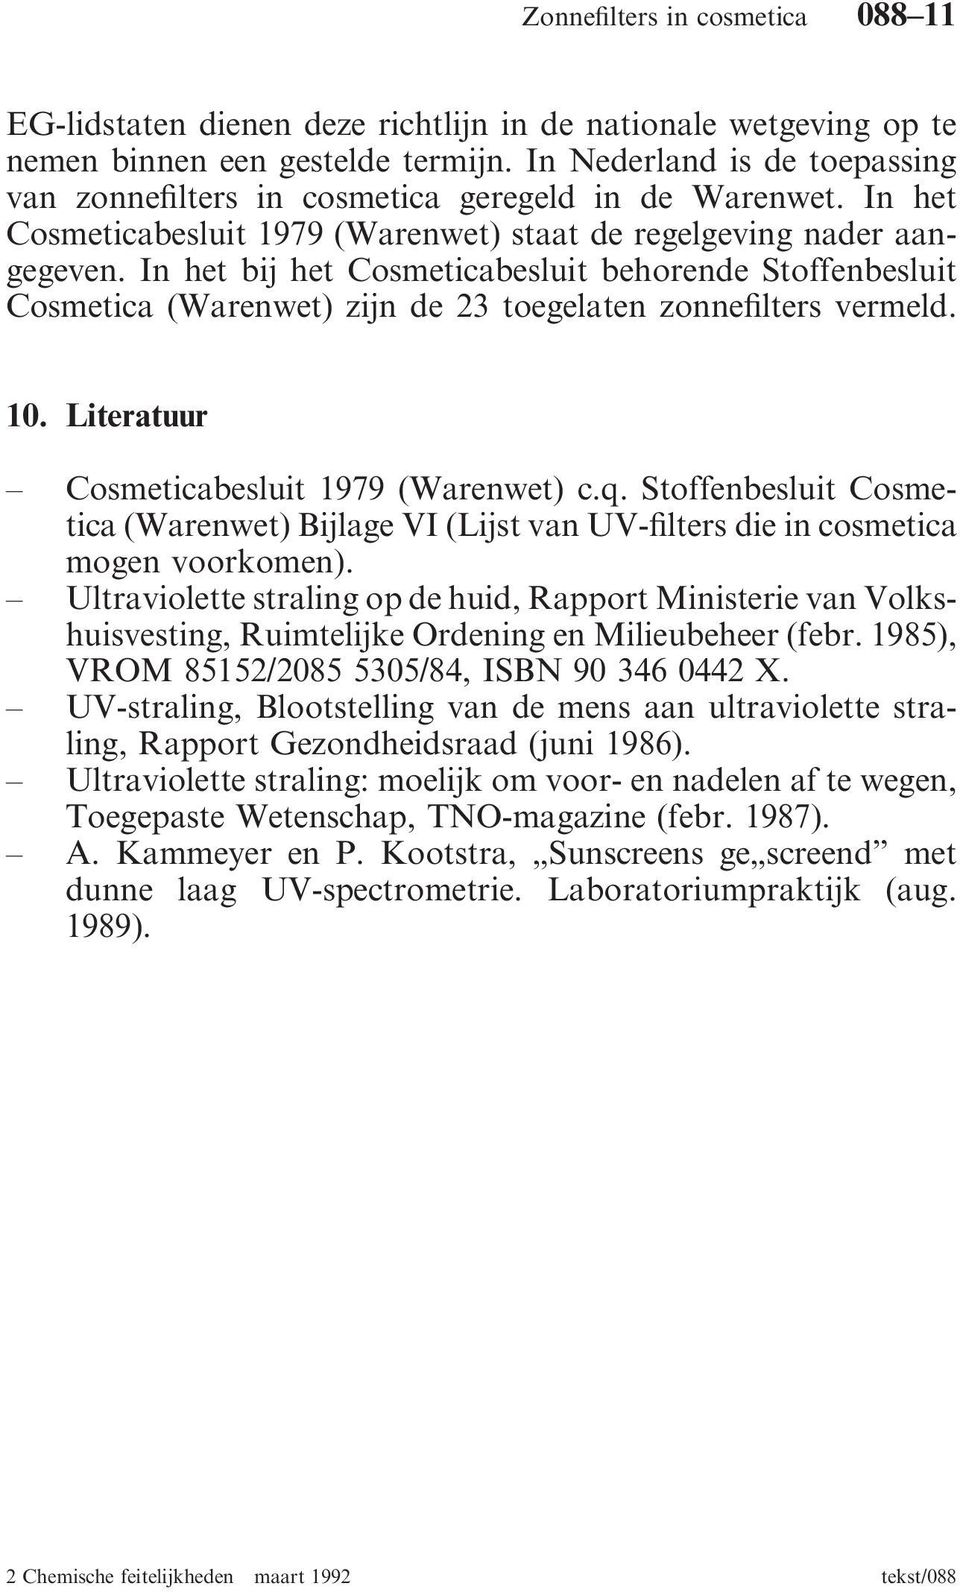 10. Literatuur Cosmeticabesluit 1979 (Warenwet) c.q. Stoffenbesluit Cosmetica (Warenwet) Bijlage VI (Lijst van UV-filters die in cosmetica mogen voorkomen).